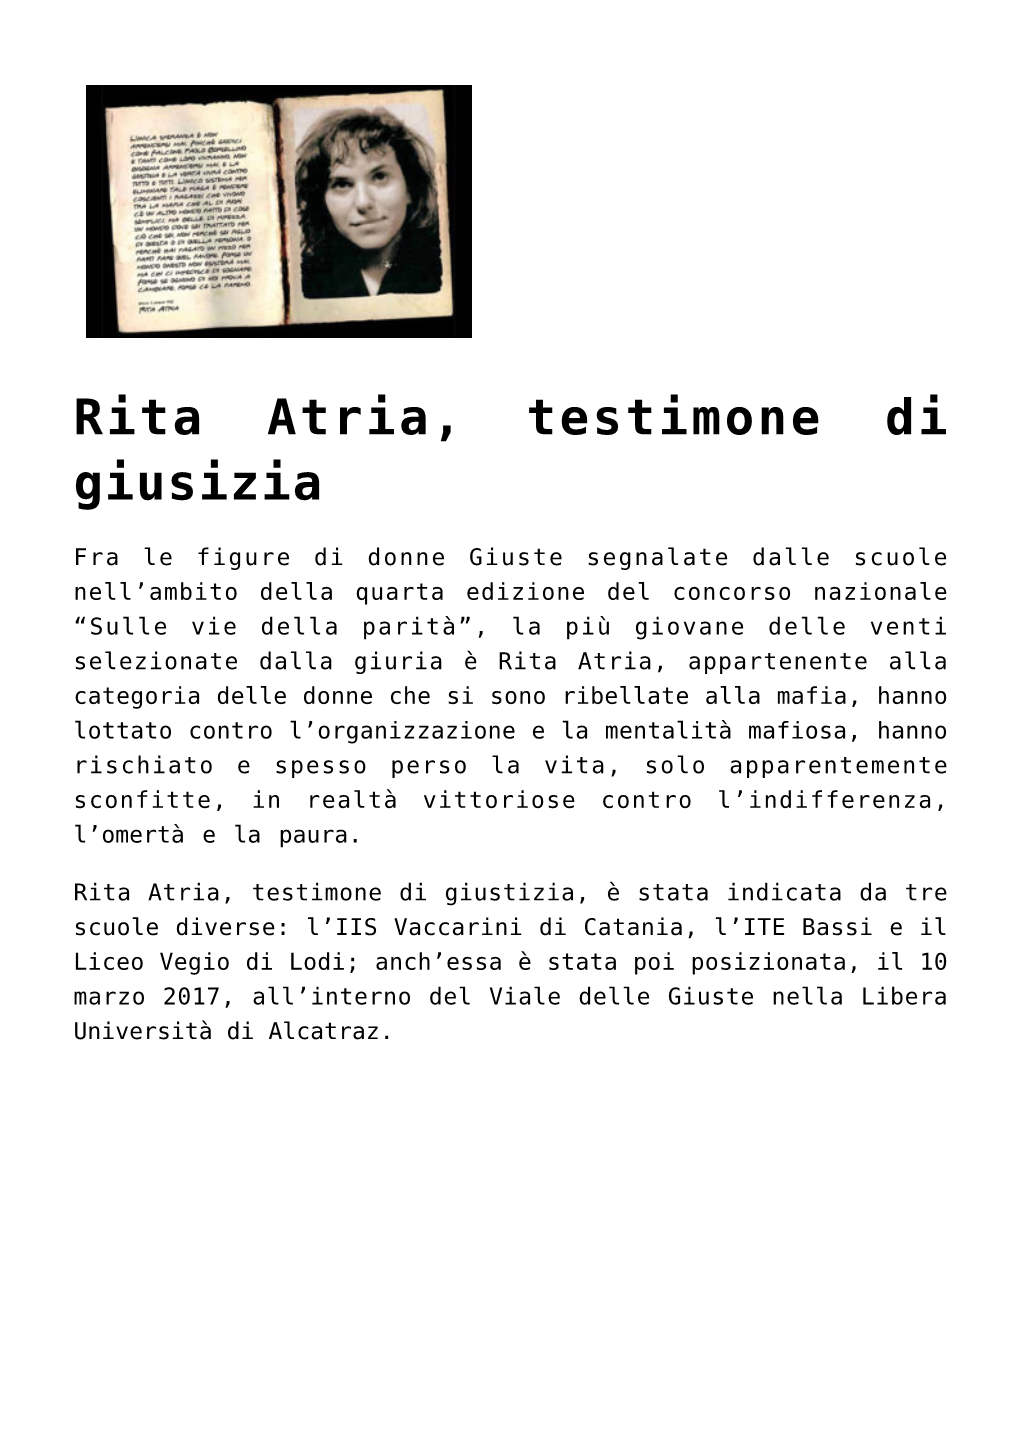 Rita Atria, Testimone Di Giusizia